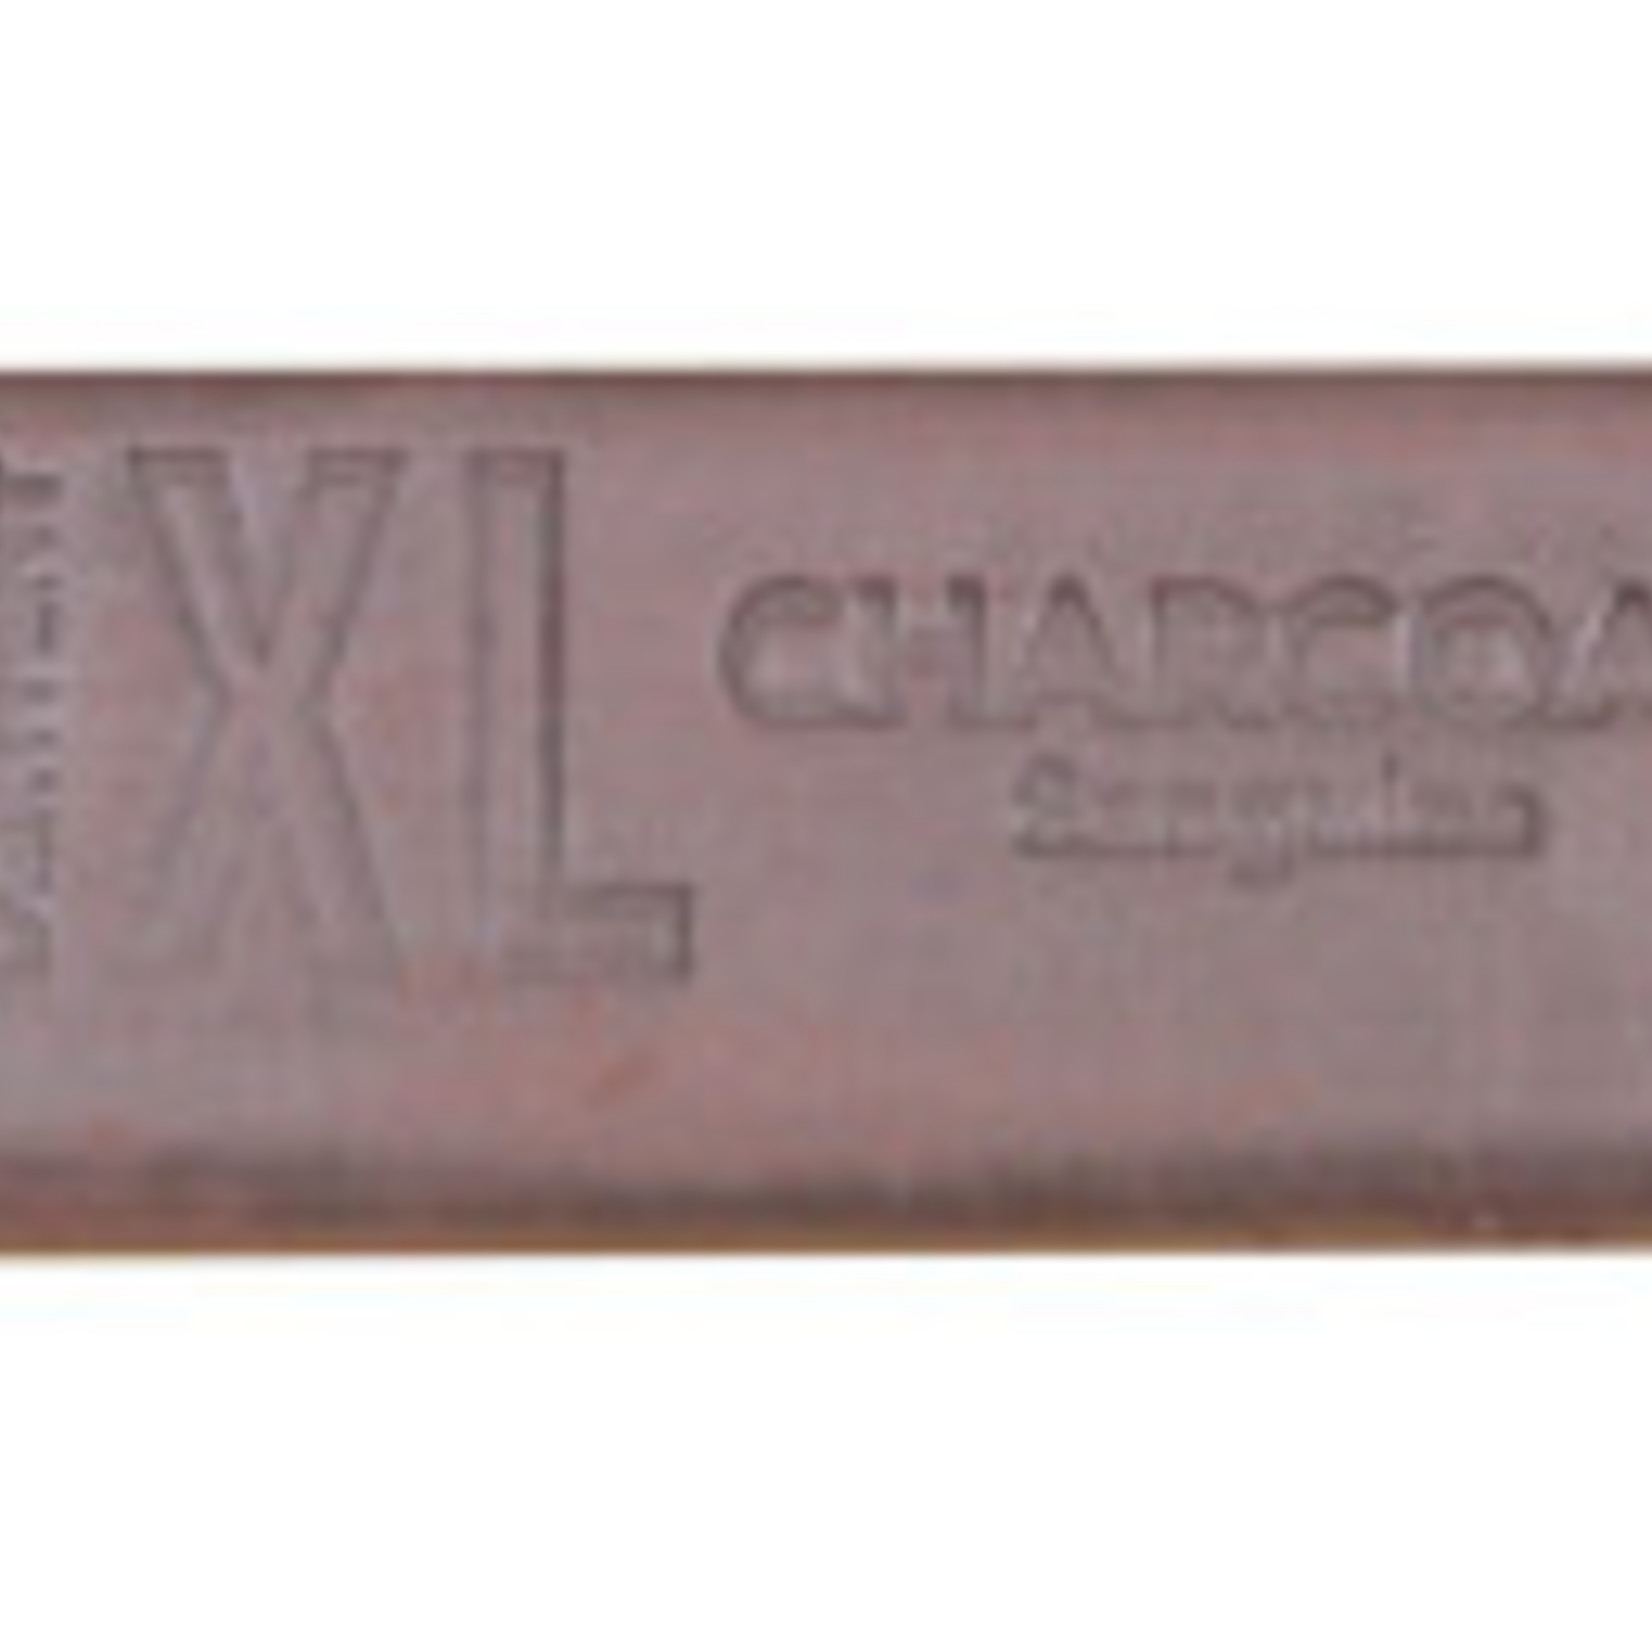 DERWENT XL CHARCOAL 02 SANGUINE